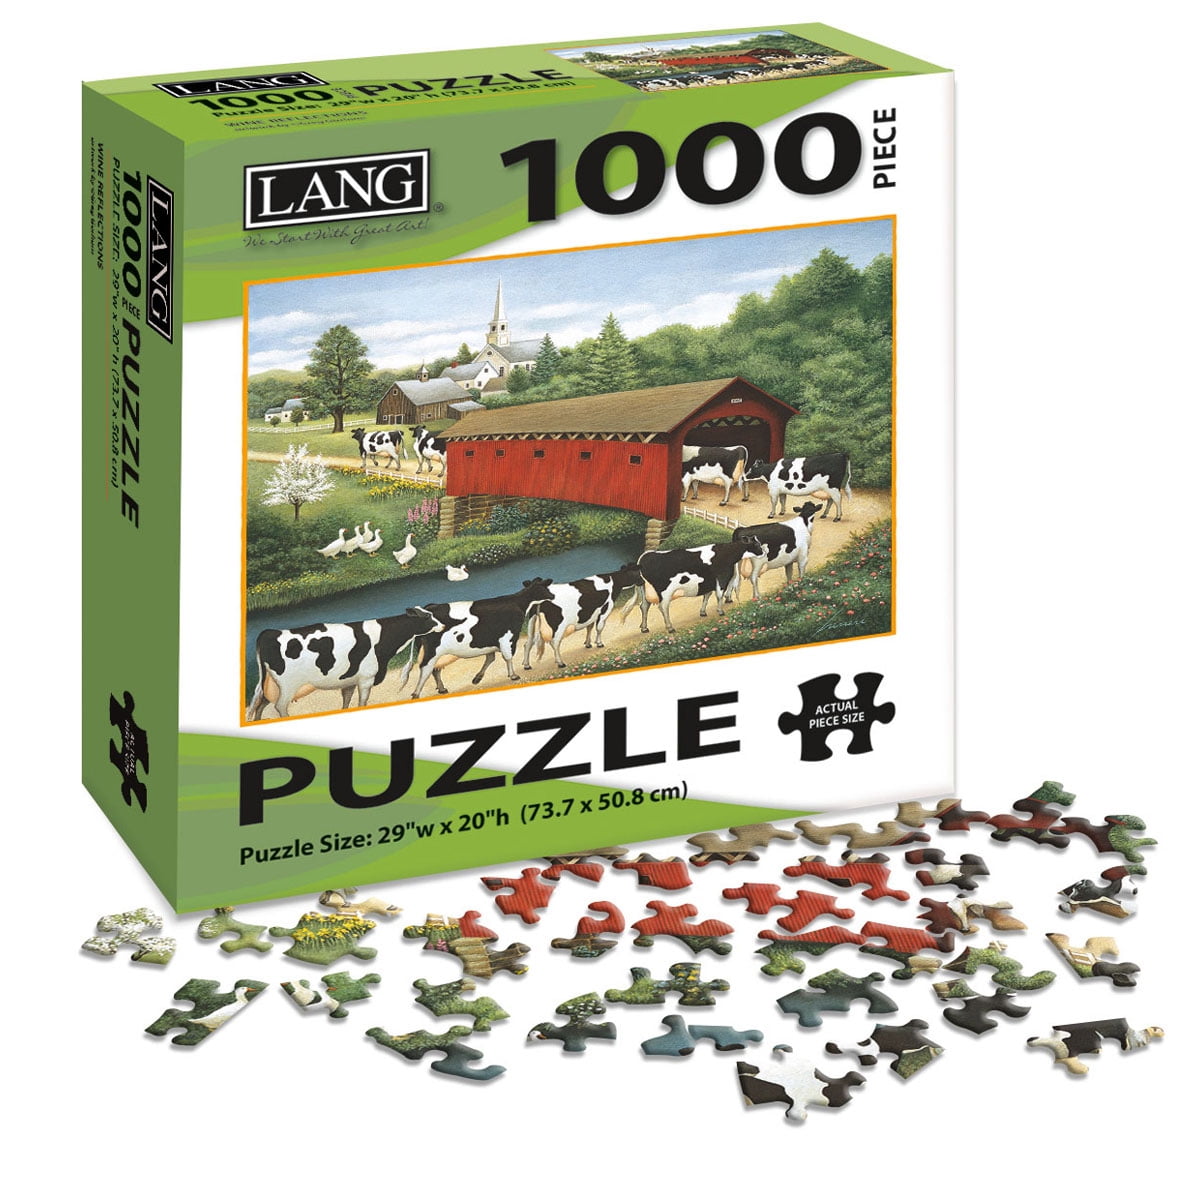 jigsaw-puzzle-1000-pieces-29-x20-cows-cows-cows-walmart-canada